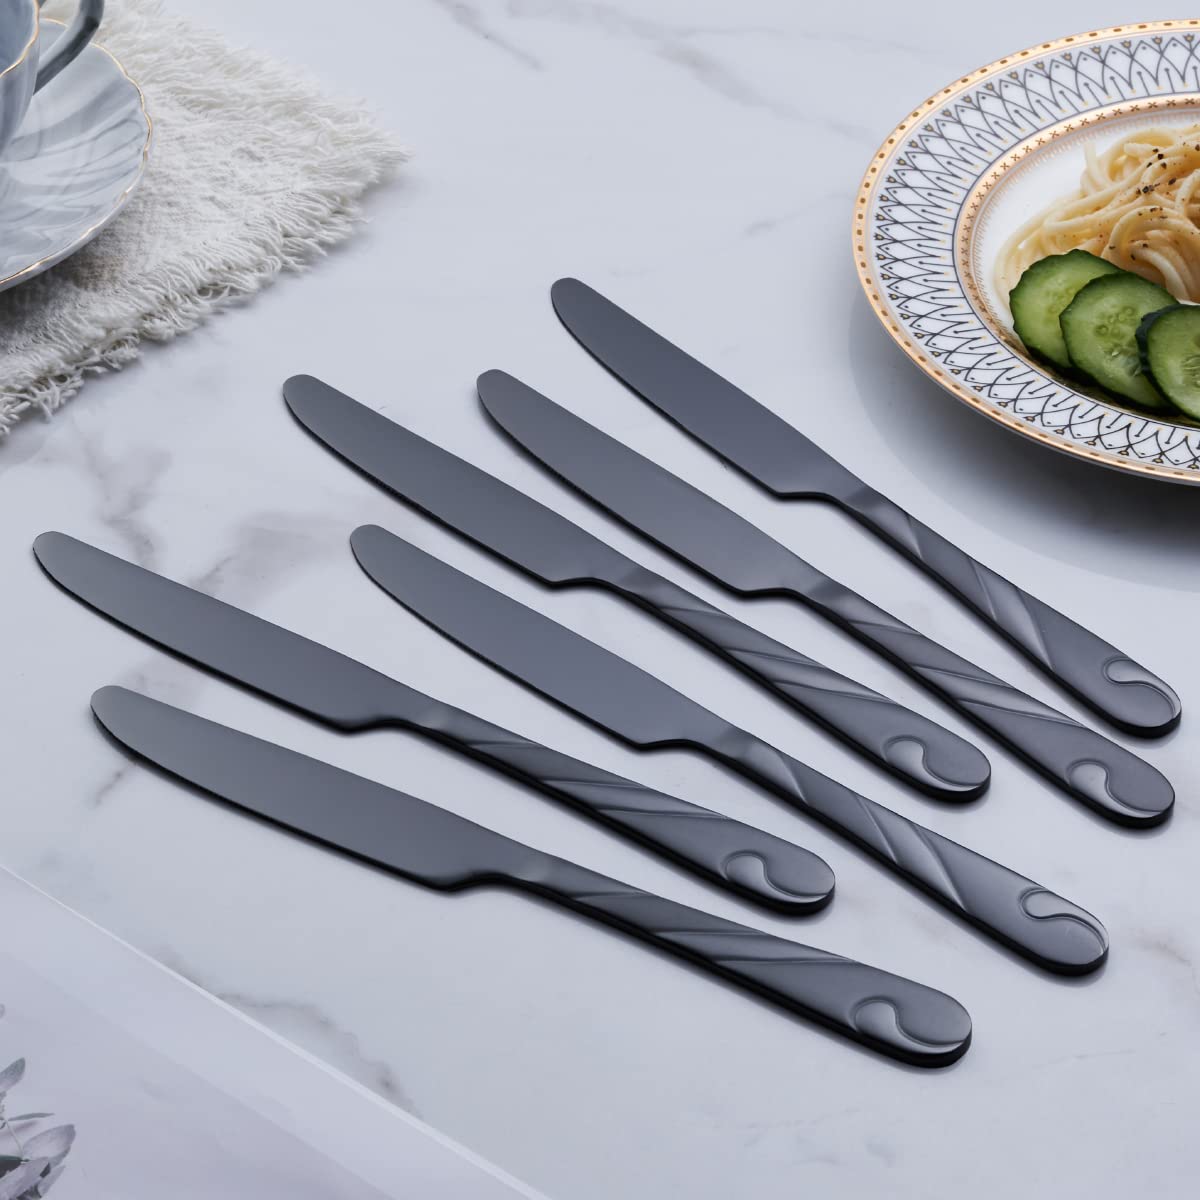 Seeshine Black Dinner Knife Set, 9.2-inch Stainless Steel Shiny Black Dinner Table Knife Silverware, Set of 6